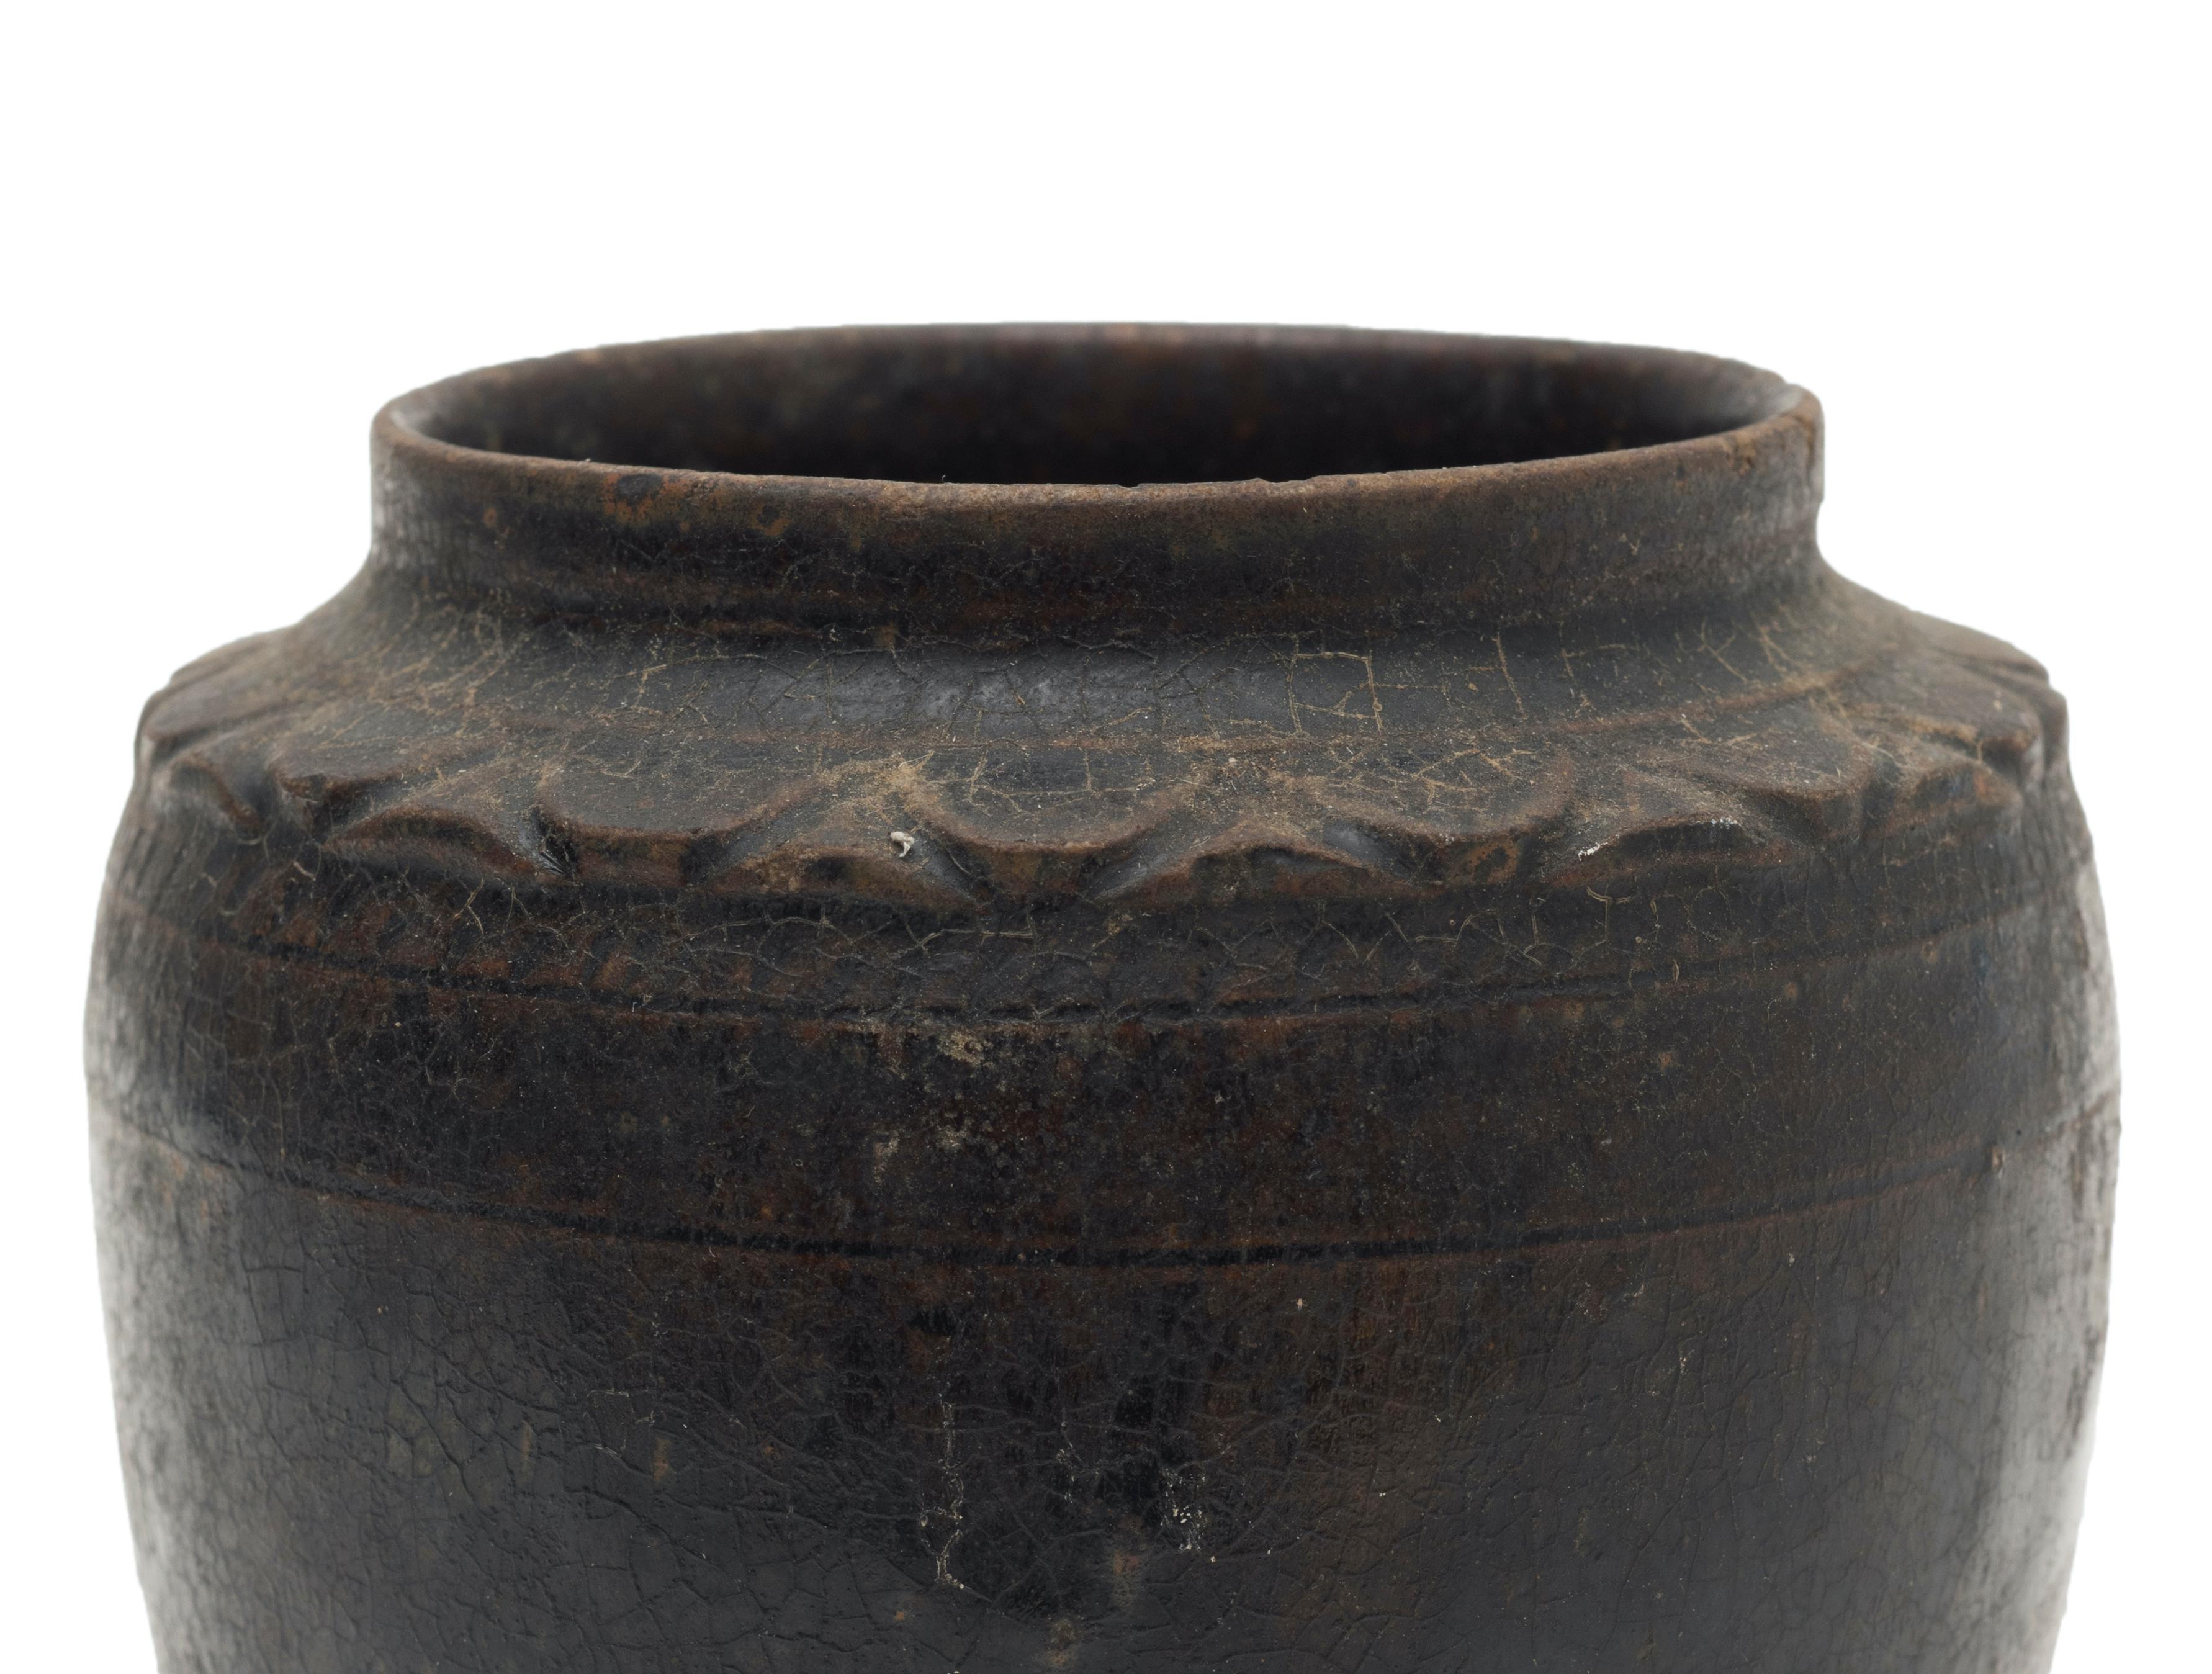 Ce vase oriental très rare est un objet décoratif original en porcelaine réalisé en Chine par des manufactures chinoises au cours du 19ème siècle.

Mesures : Diamètre 11 cm

Cet objet est expédié d'Italie. Selon la législation en vigueur, tout